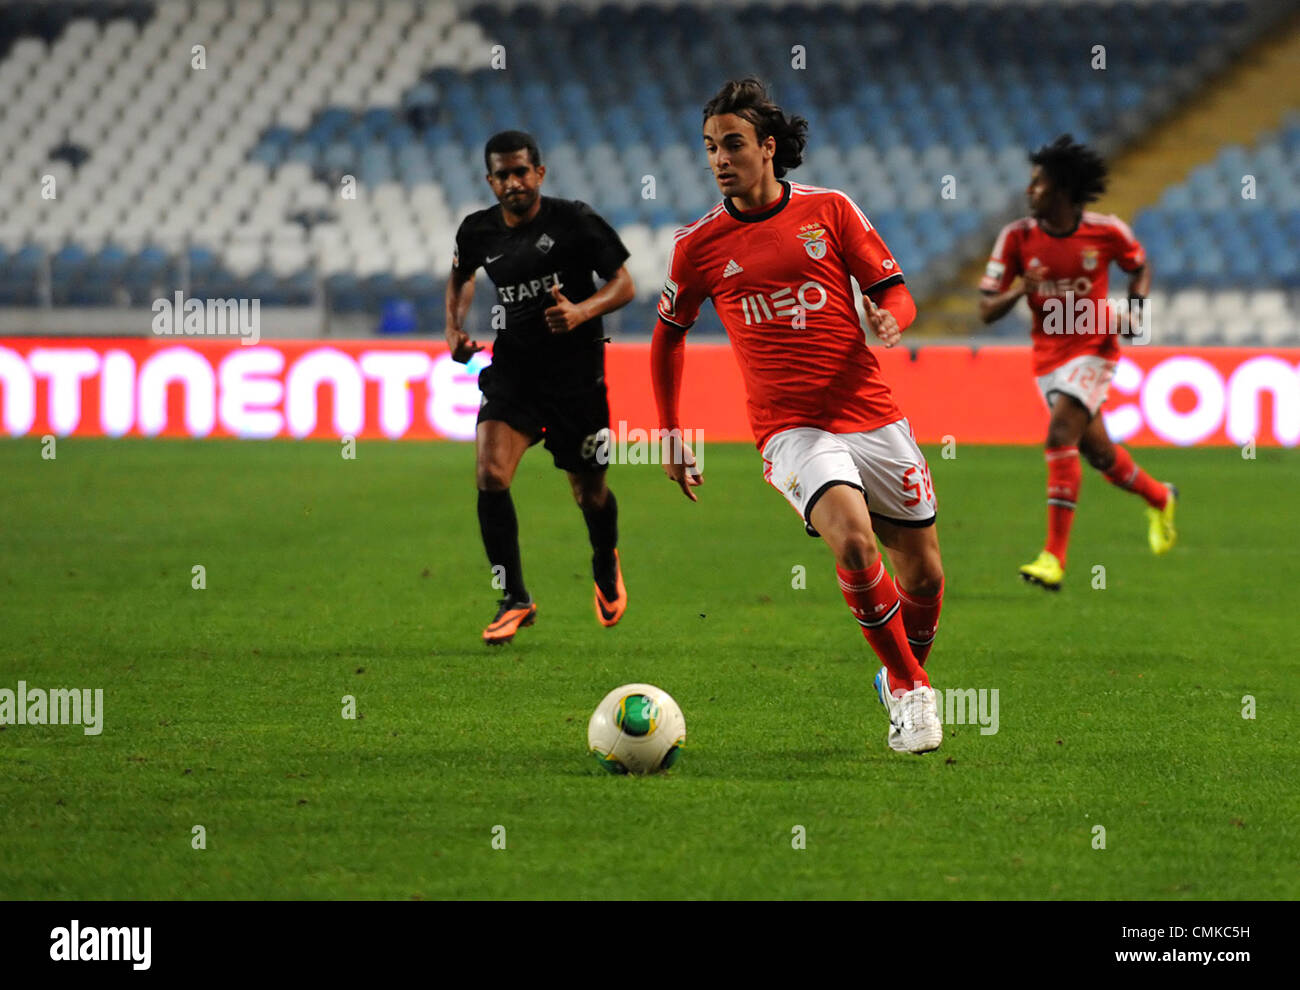 Riscontro serbo Lazar Markovic di Benfica corre con la palla durante il portoghese Liga Zon Sagres partita di calcio tra Academica e Benfica Foto Stock